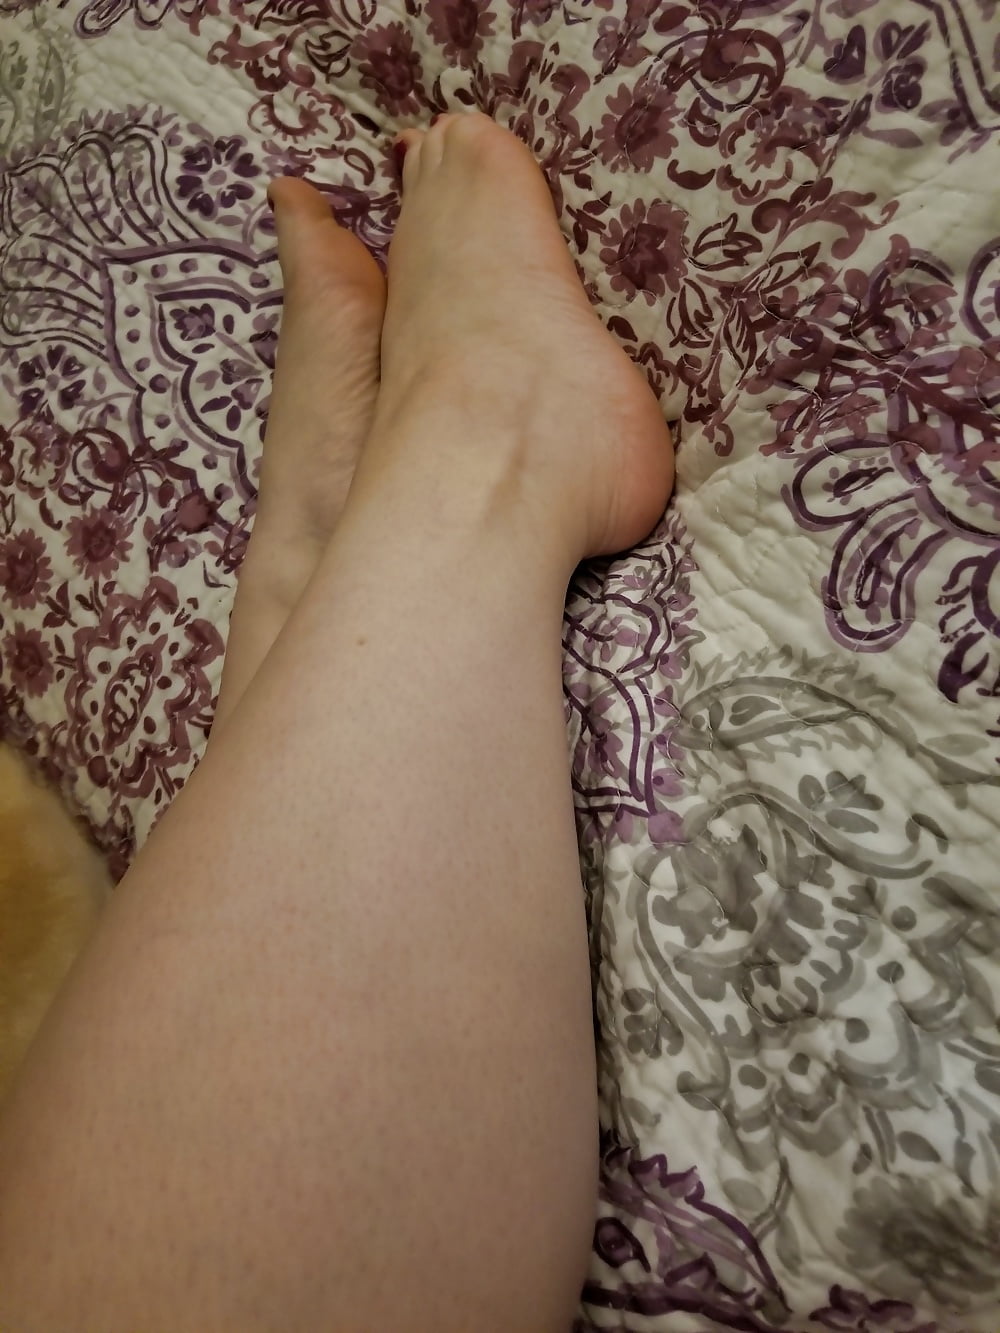 Pieds, jambes, talons et bottes de la douce ménagère sexy
 #106605640